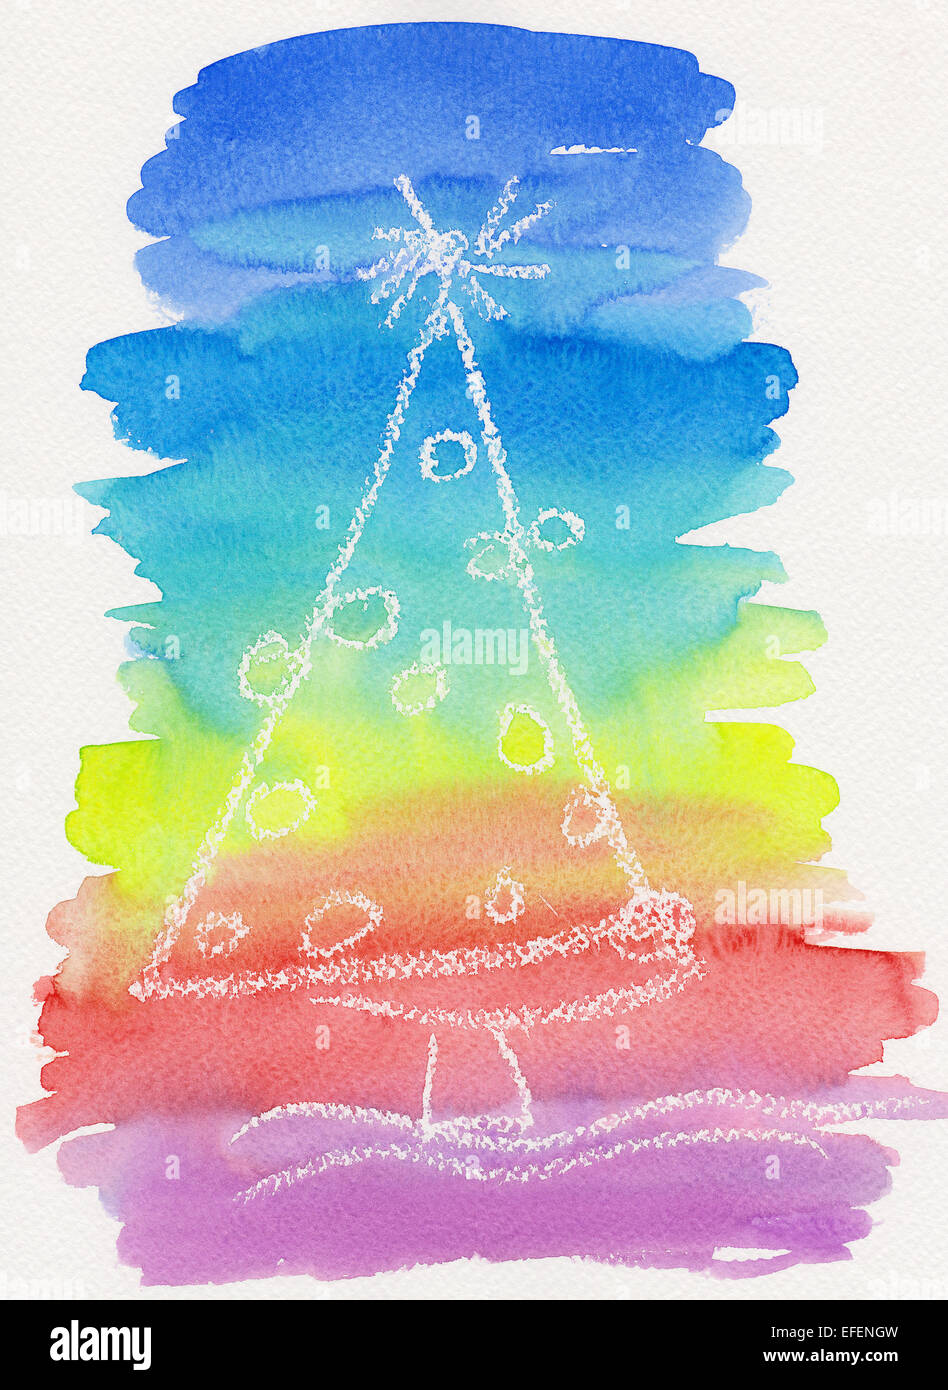 L'aquarelle d'un arbre de Noël décoré en couleurs arc-en-ciel Banque D'Images